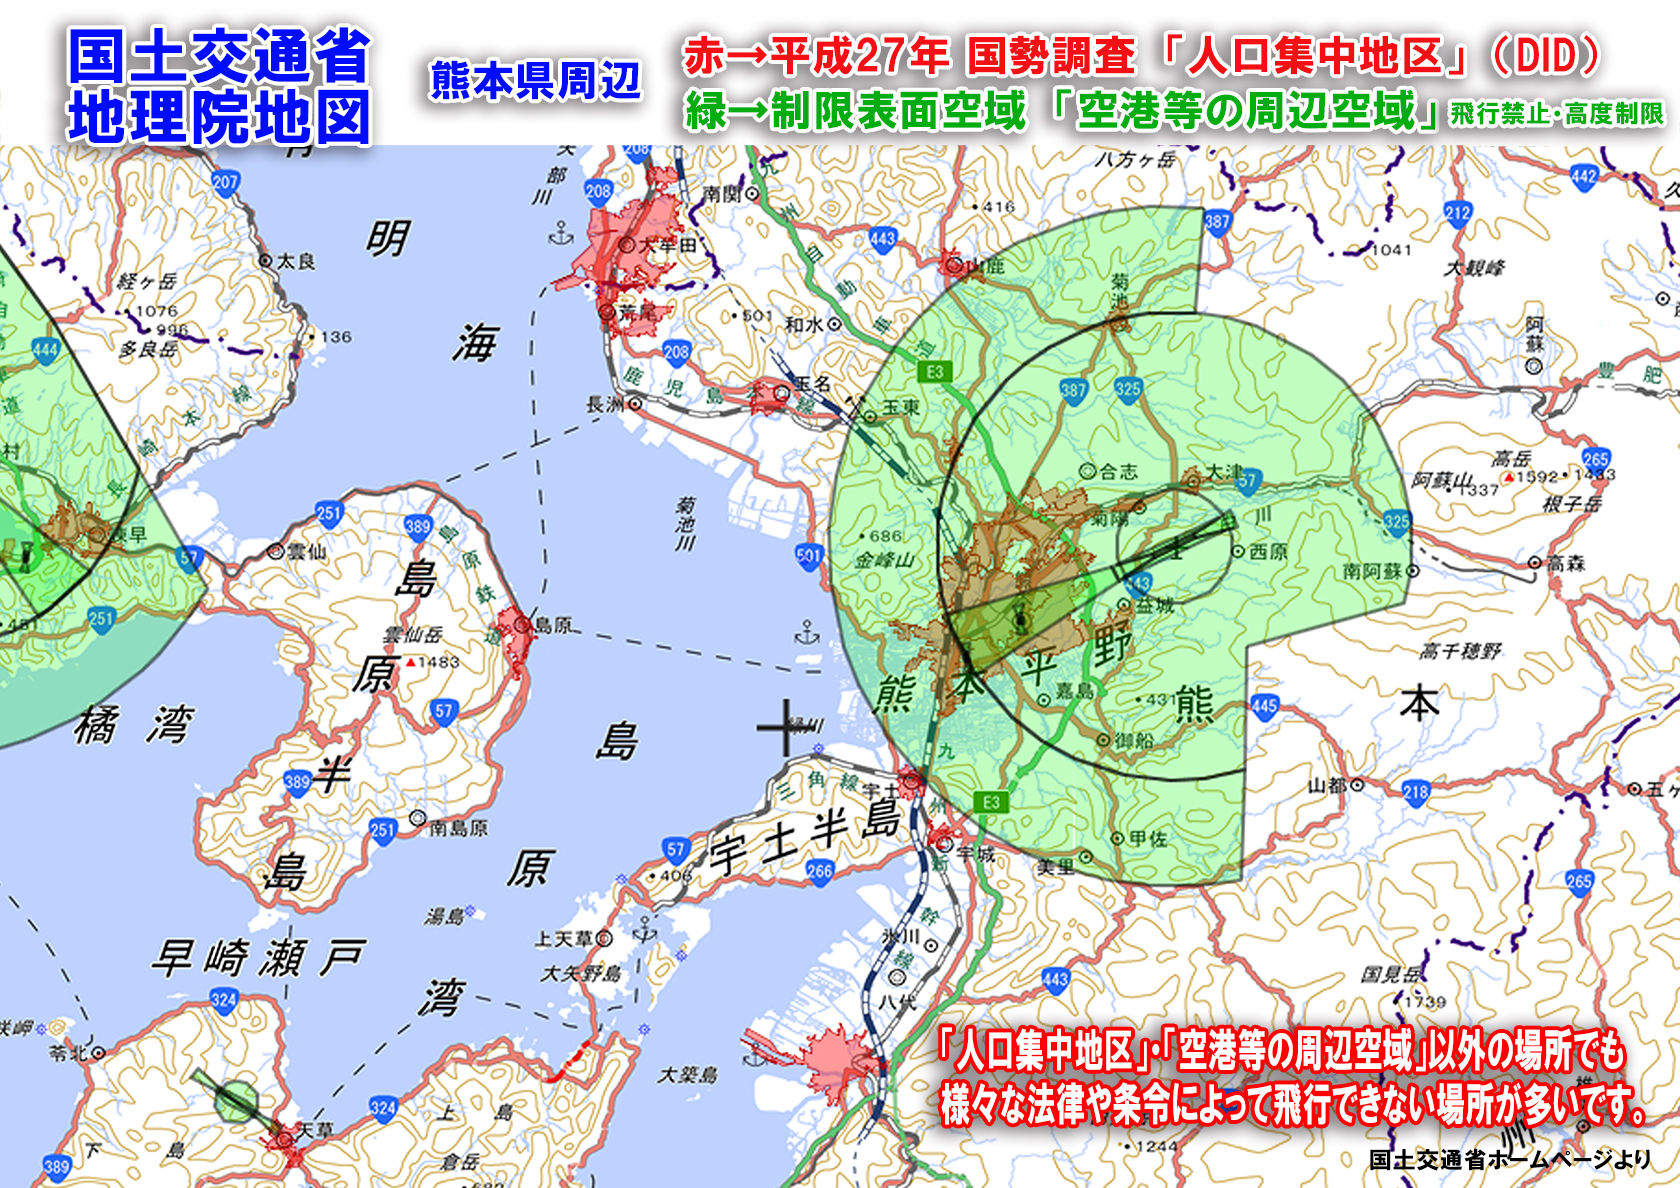 ドローン熊本県周辺の人口集中地区と空港等の周辺空域